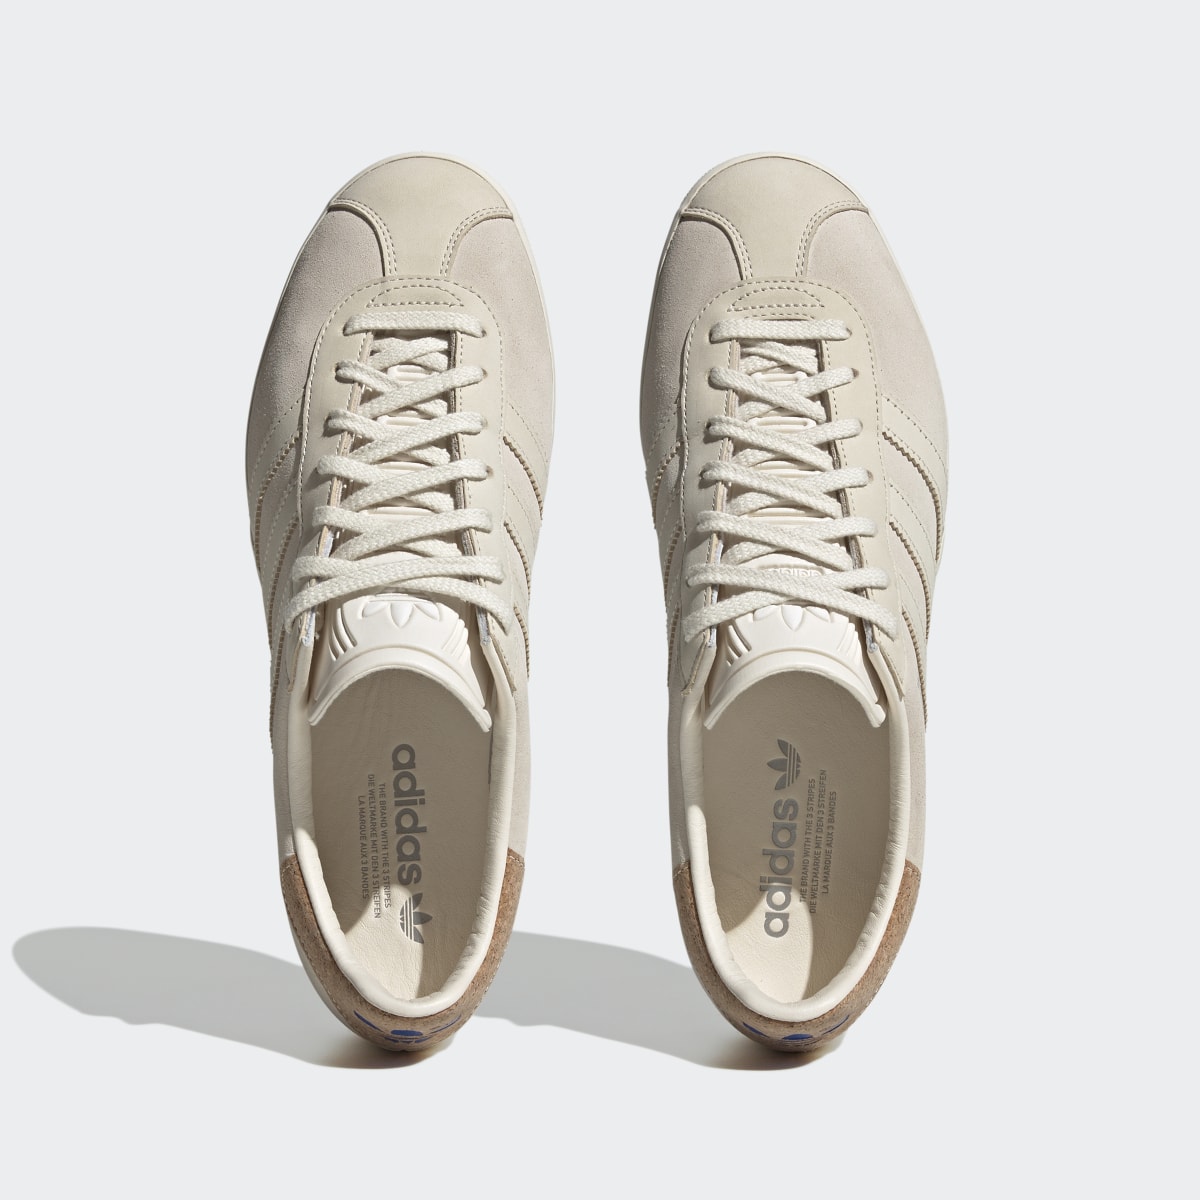 Adidas Gazelle 85 Shoes. 4